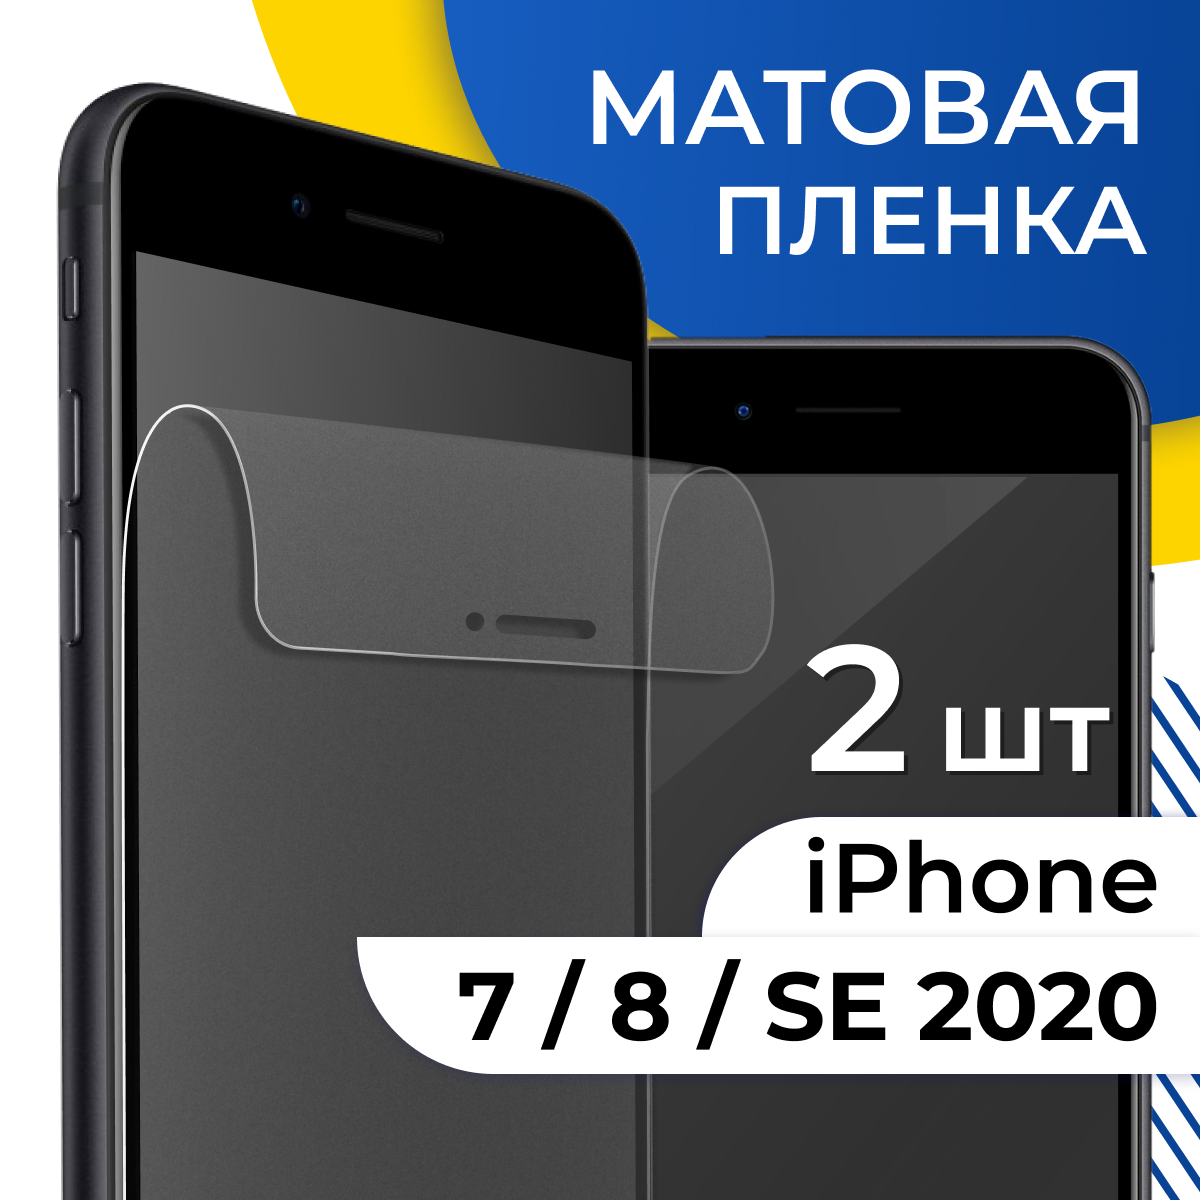 Комплект 2 шт. Матовая пленка для iPhone 7, 8, SE 2020 / Защитная пленка на Айфон 7, 8 и СЕ 2020 / Гидрогелевая